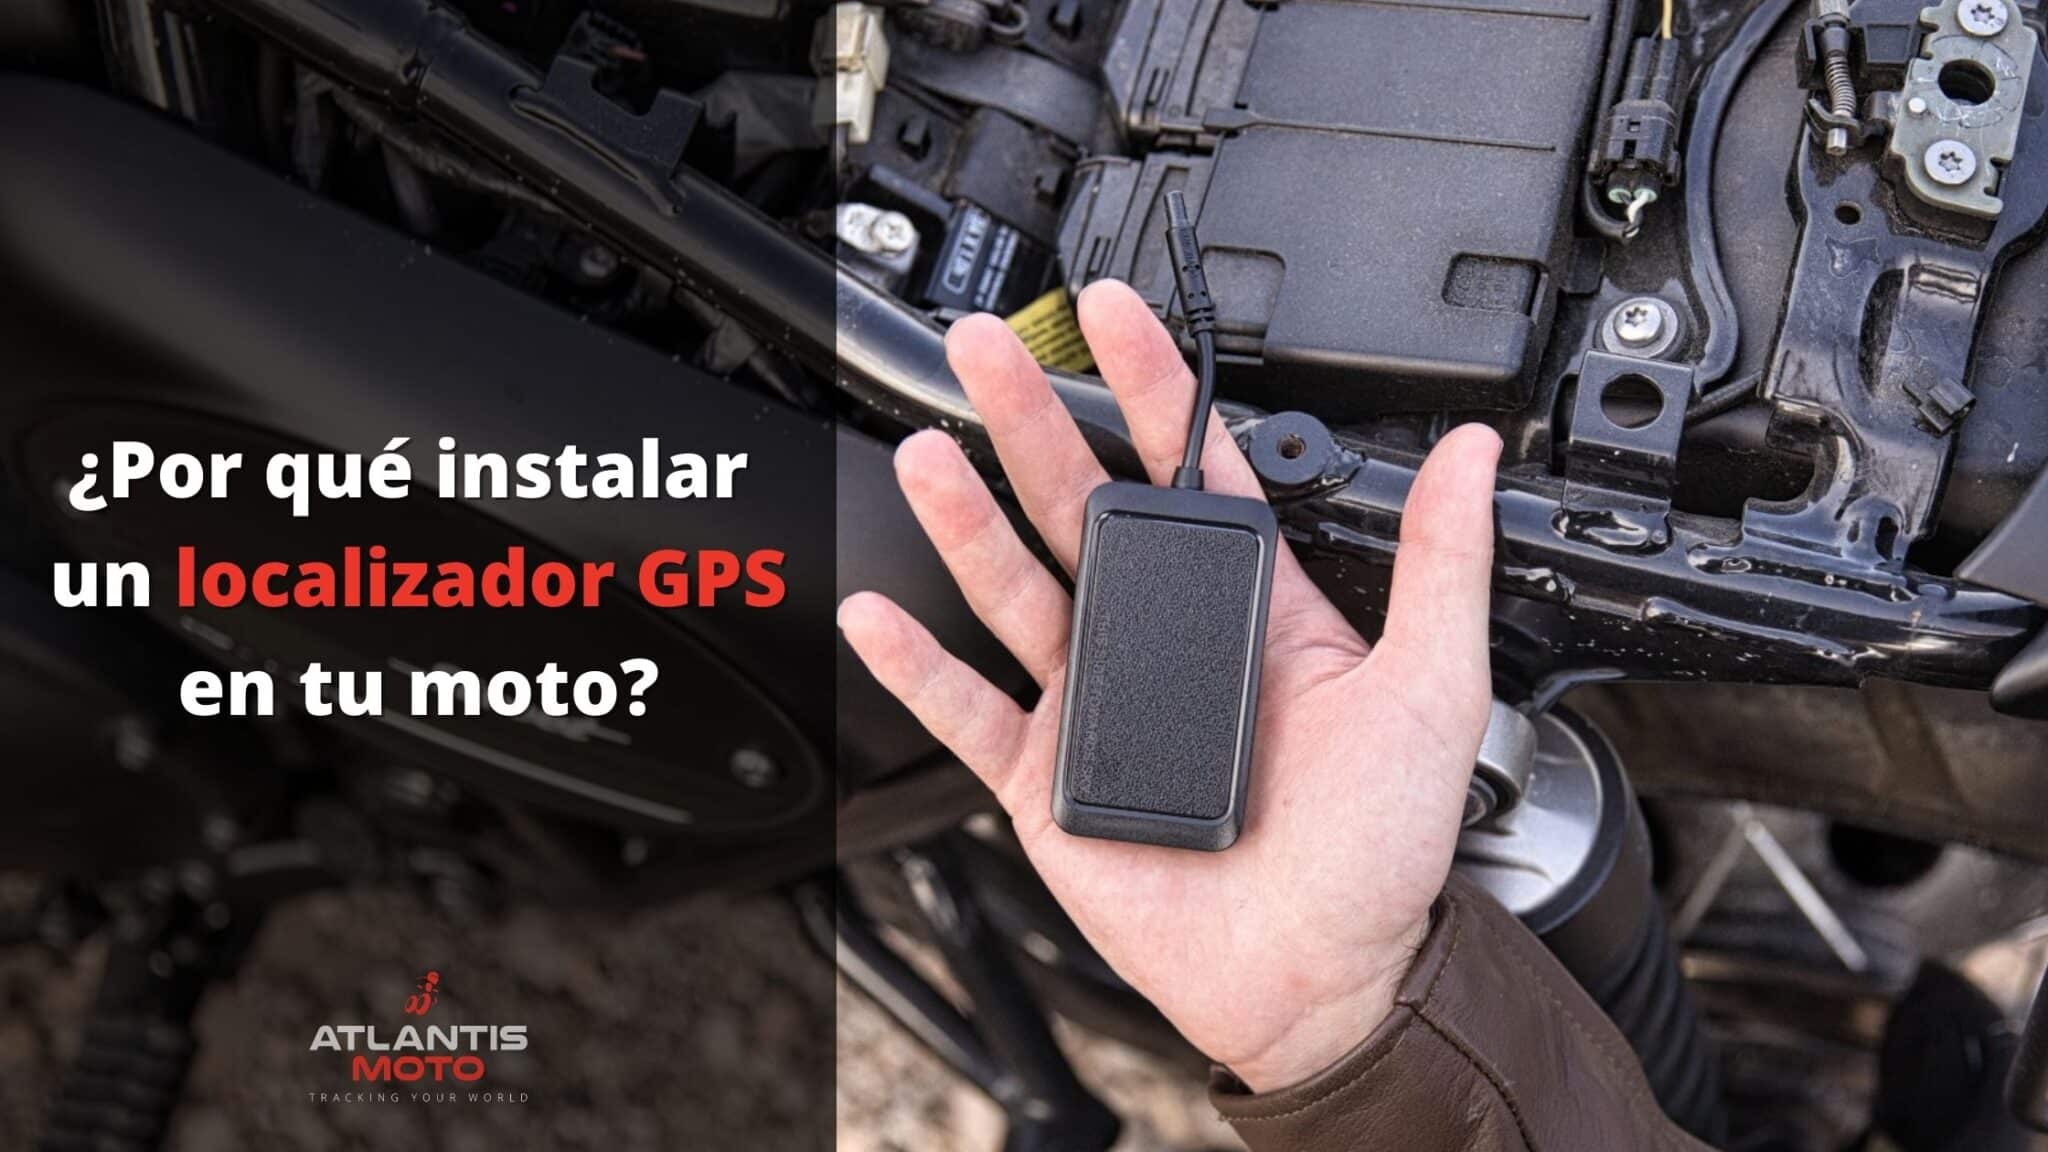 Beneficios de instalar un localizador GPS en tu moto - Atlantis Moto